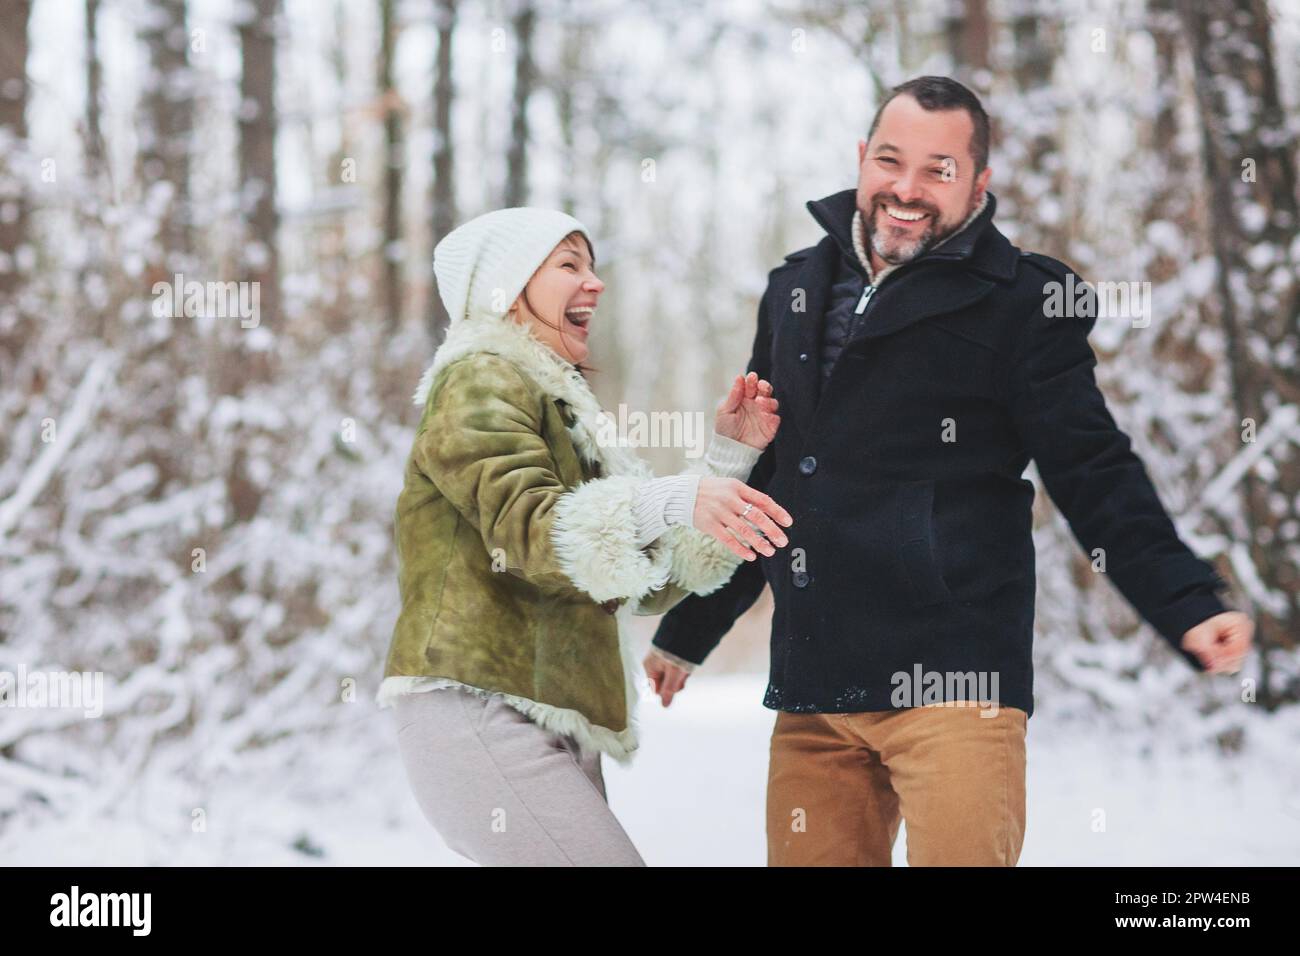 Schönes, glückliches Familienpaar mittleren Alters, das im Winter zusammen Spaß im Freien hat, einen Spaziergang durch den verschneiten Wald mit einem Lächeln, angezogen Stockfoto